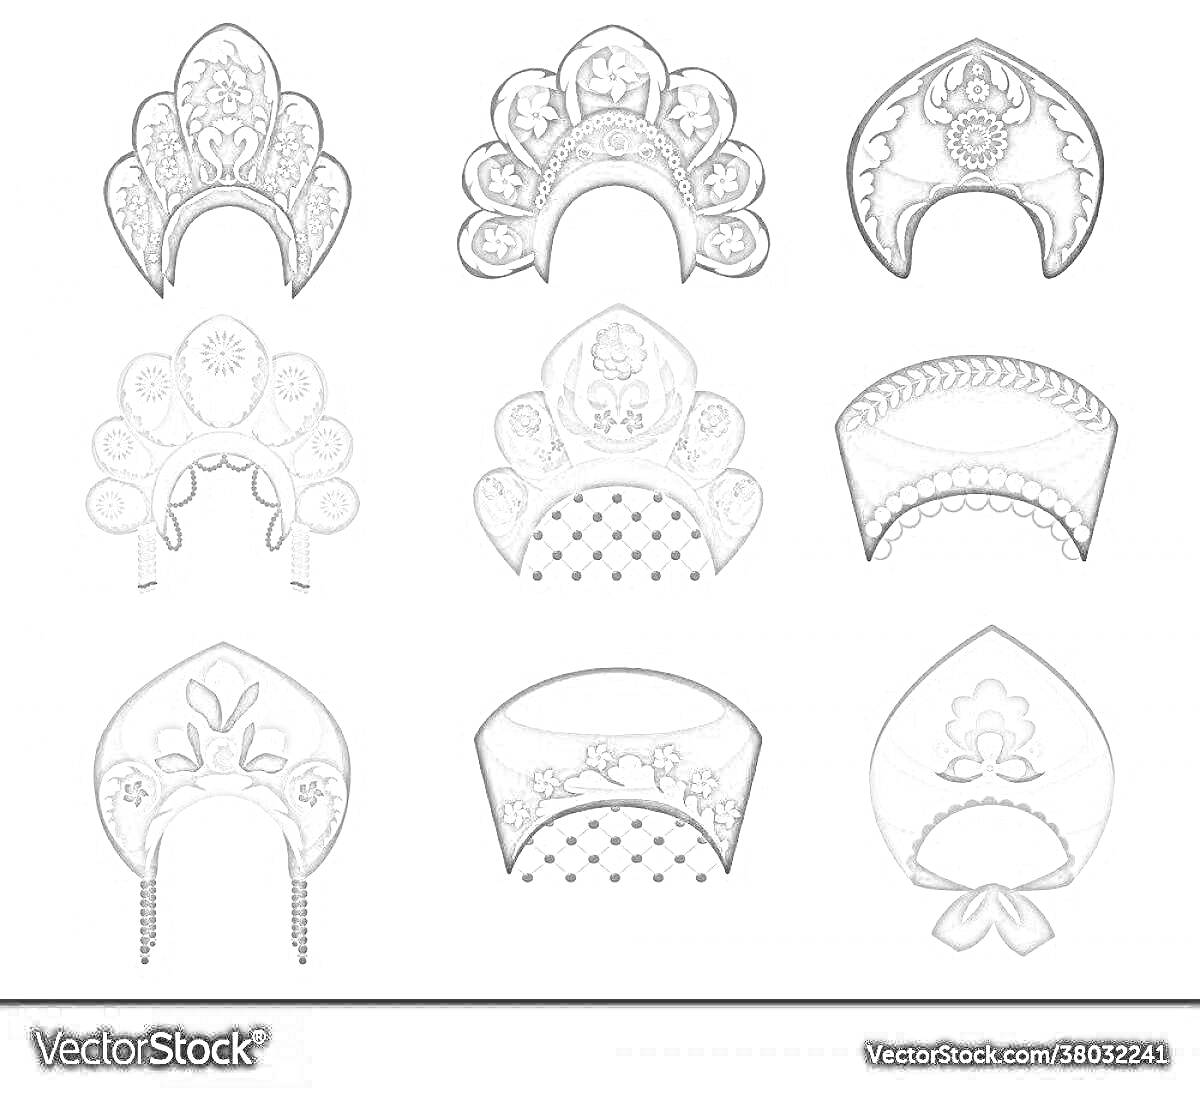 Раскраска Девять различных кокошников с элементами, такими как: растительные орнаменты, геометрические узоры, подвески, вышивка, арочные и зубчатые формы.